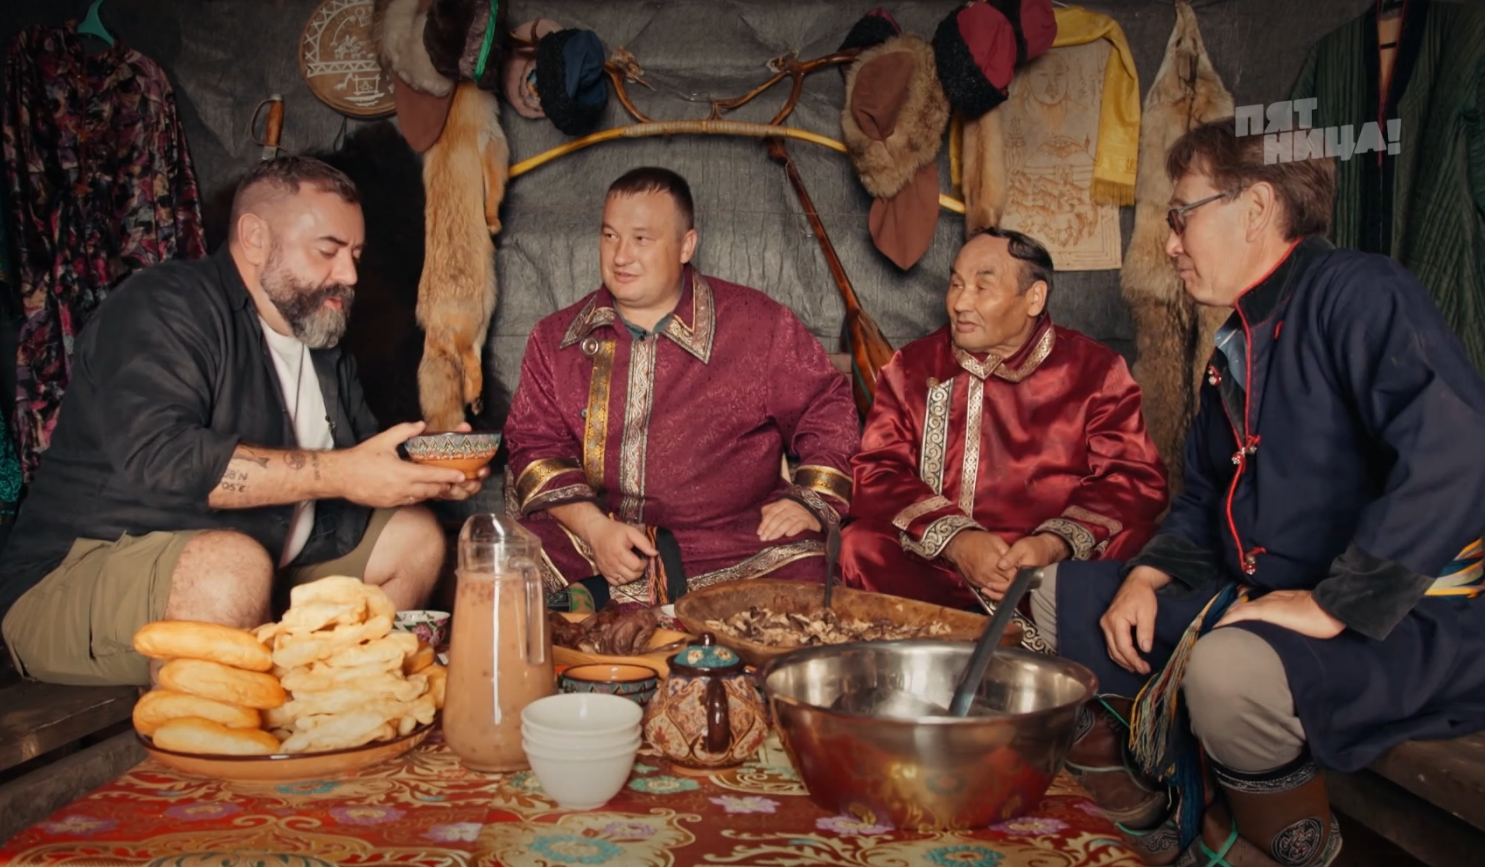 Тушёные суслики и вишнёвая горчица: известный телеведущий устроил гастротур по Кузбассу